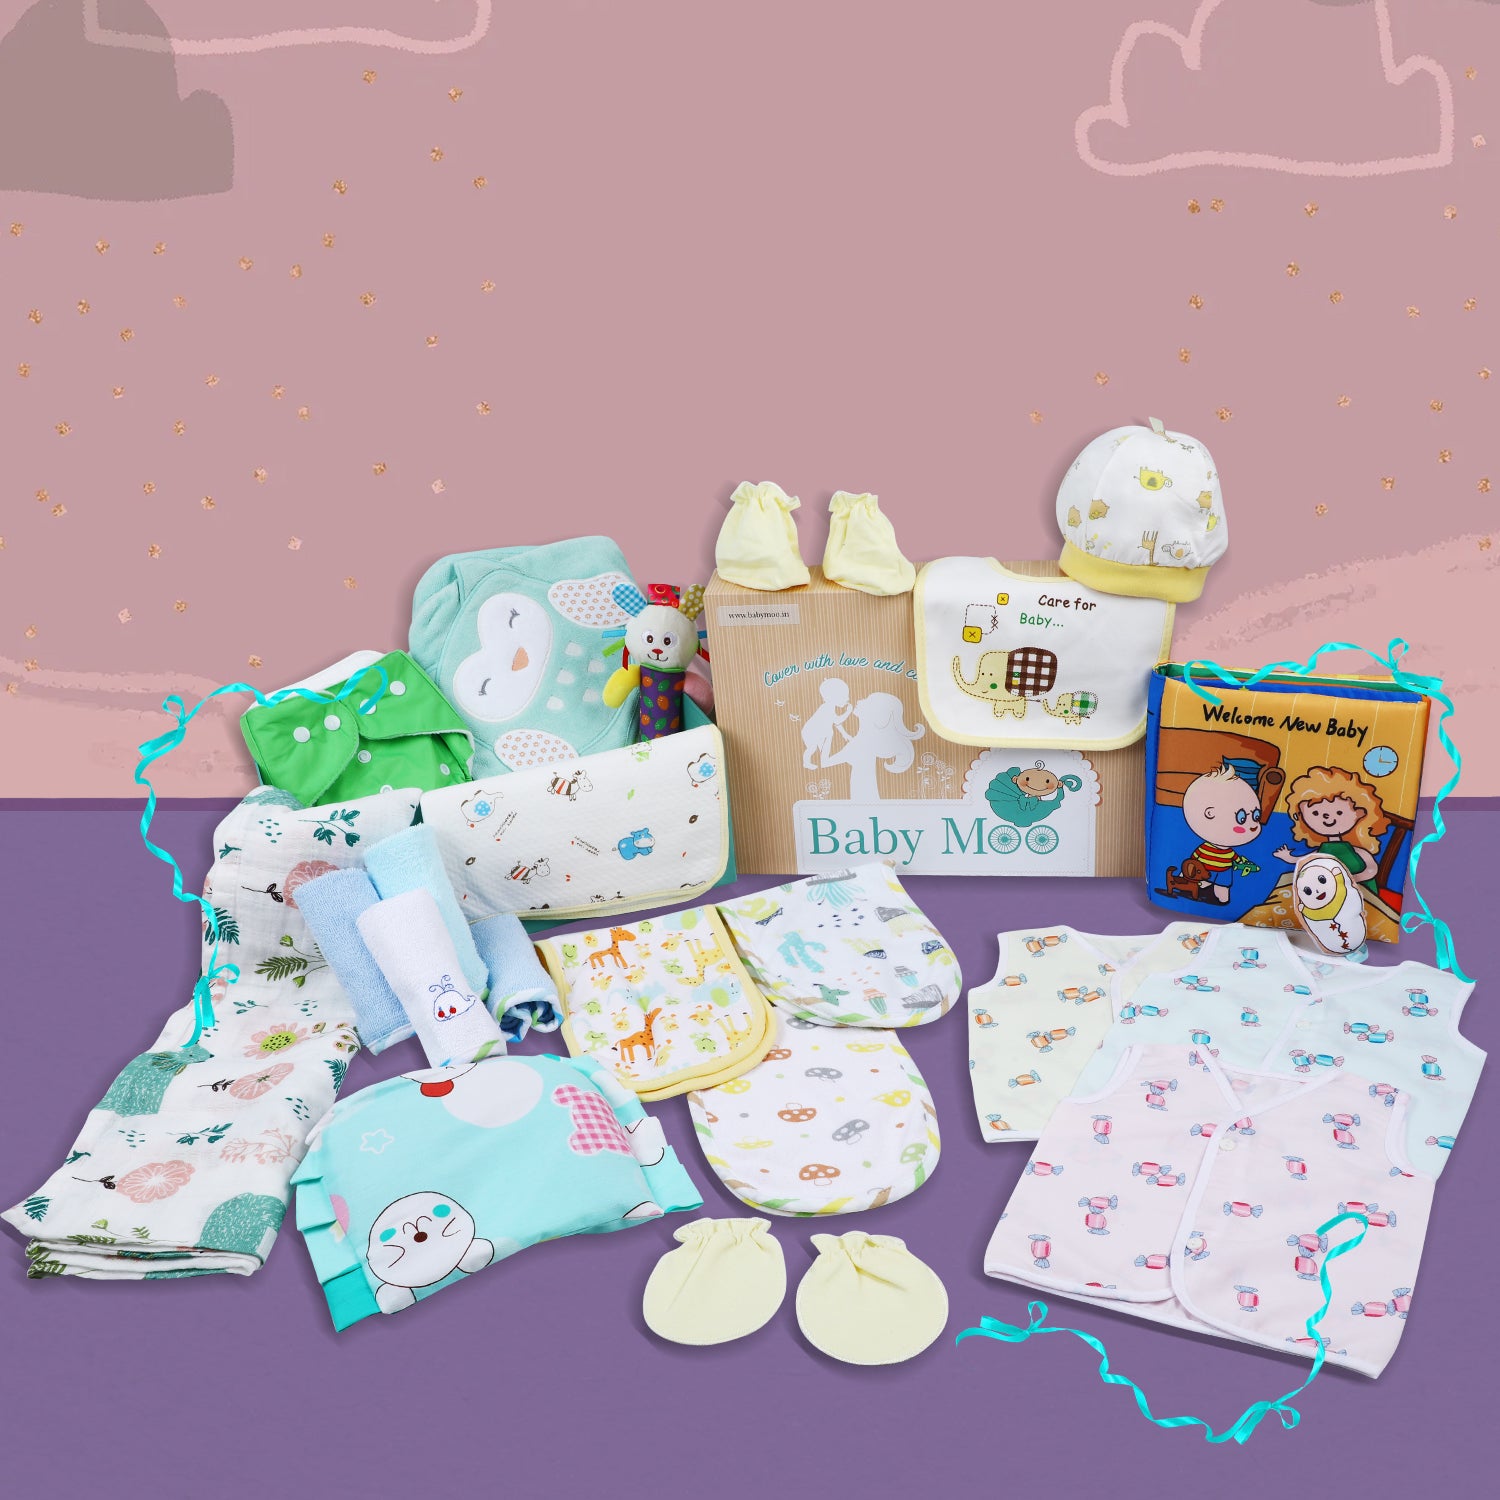 30 Best Newborn Baby Gift Ideas